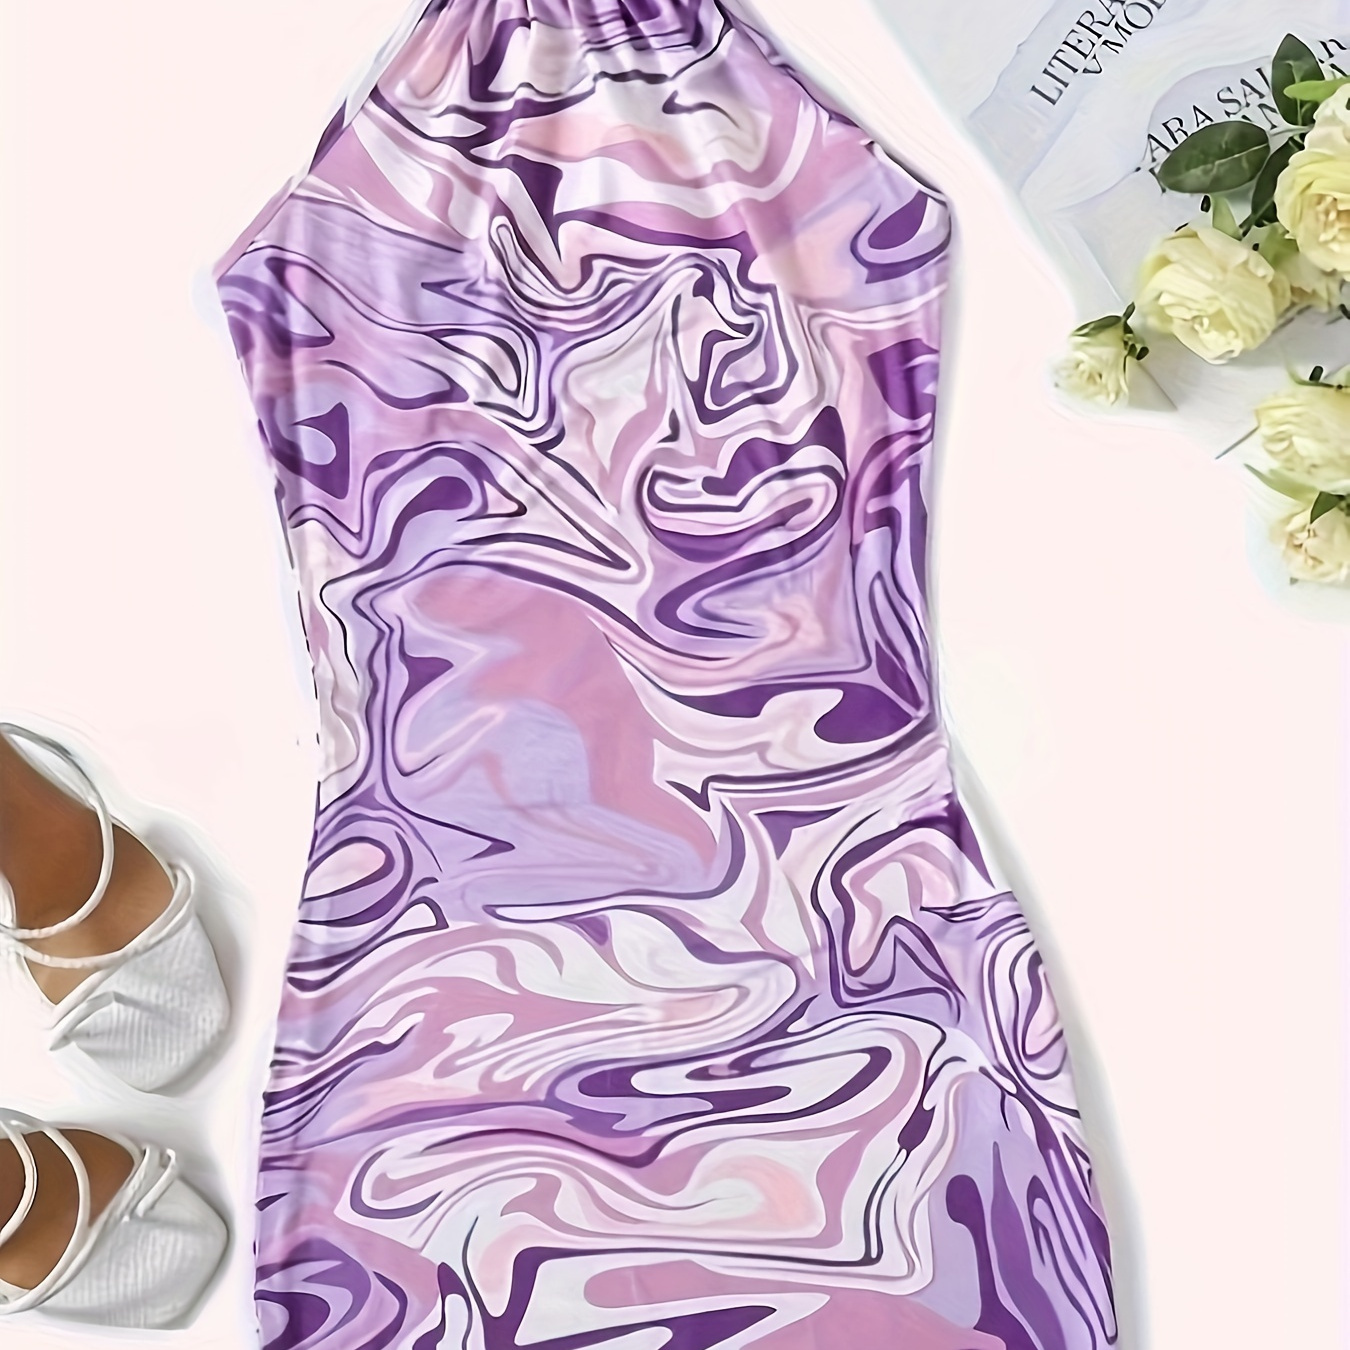 

Marble Print Halter Neck Dress, Elegant Sleeveless Dress For Spring & Summer, Women's Clothing